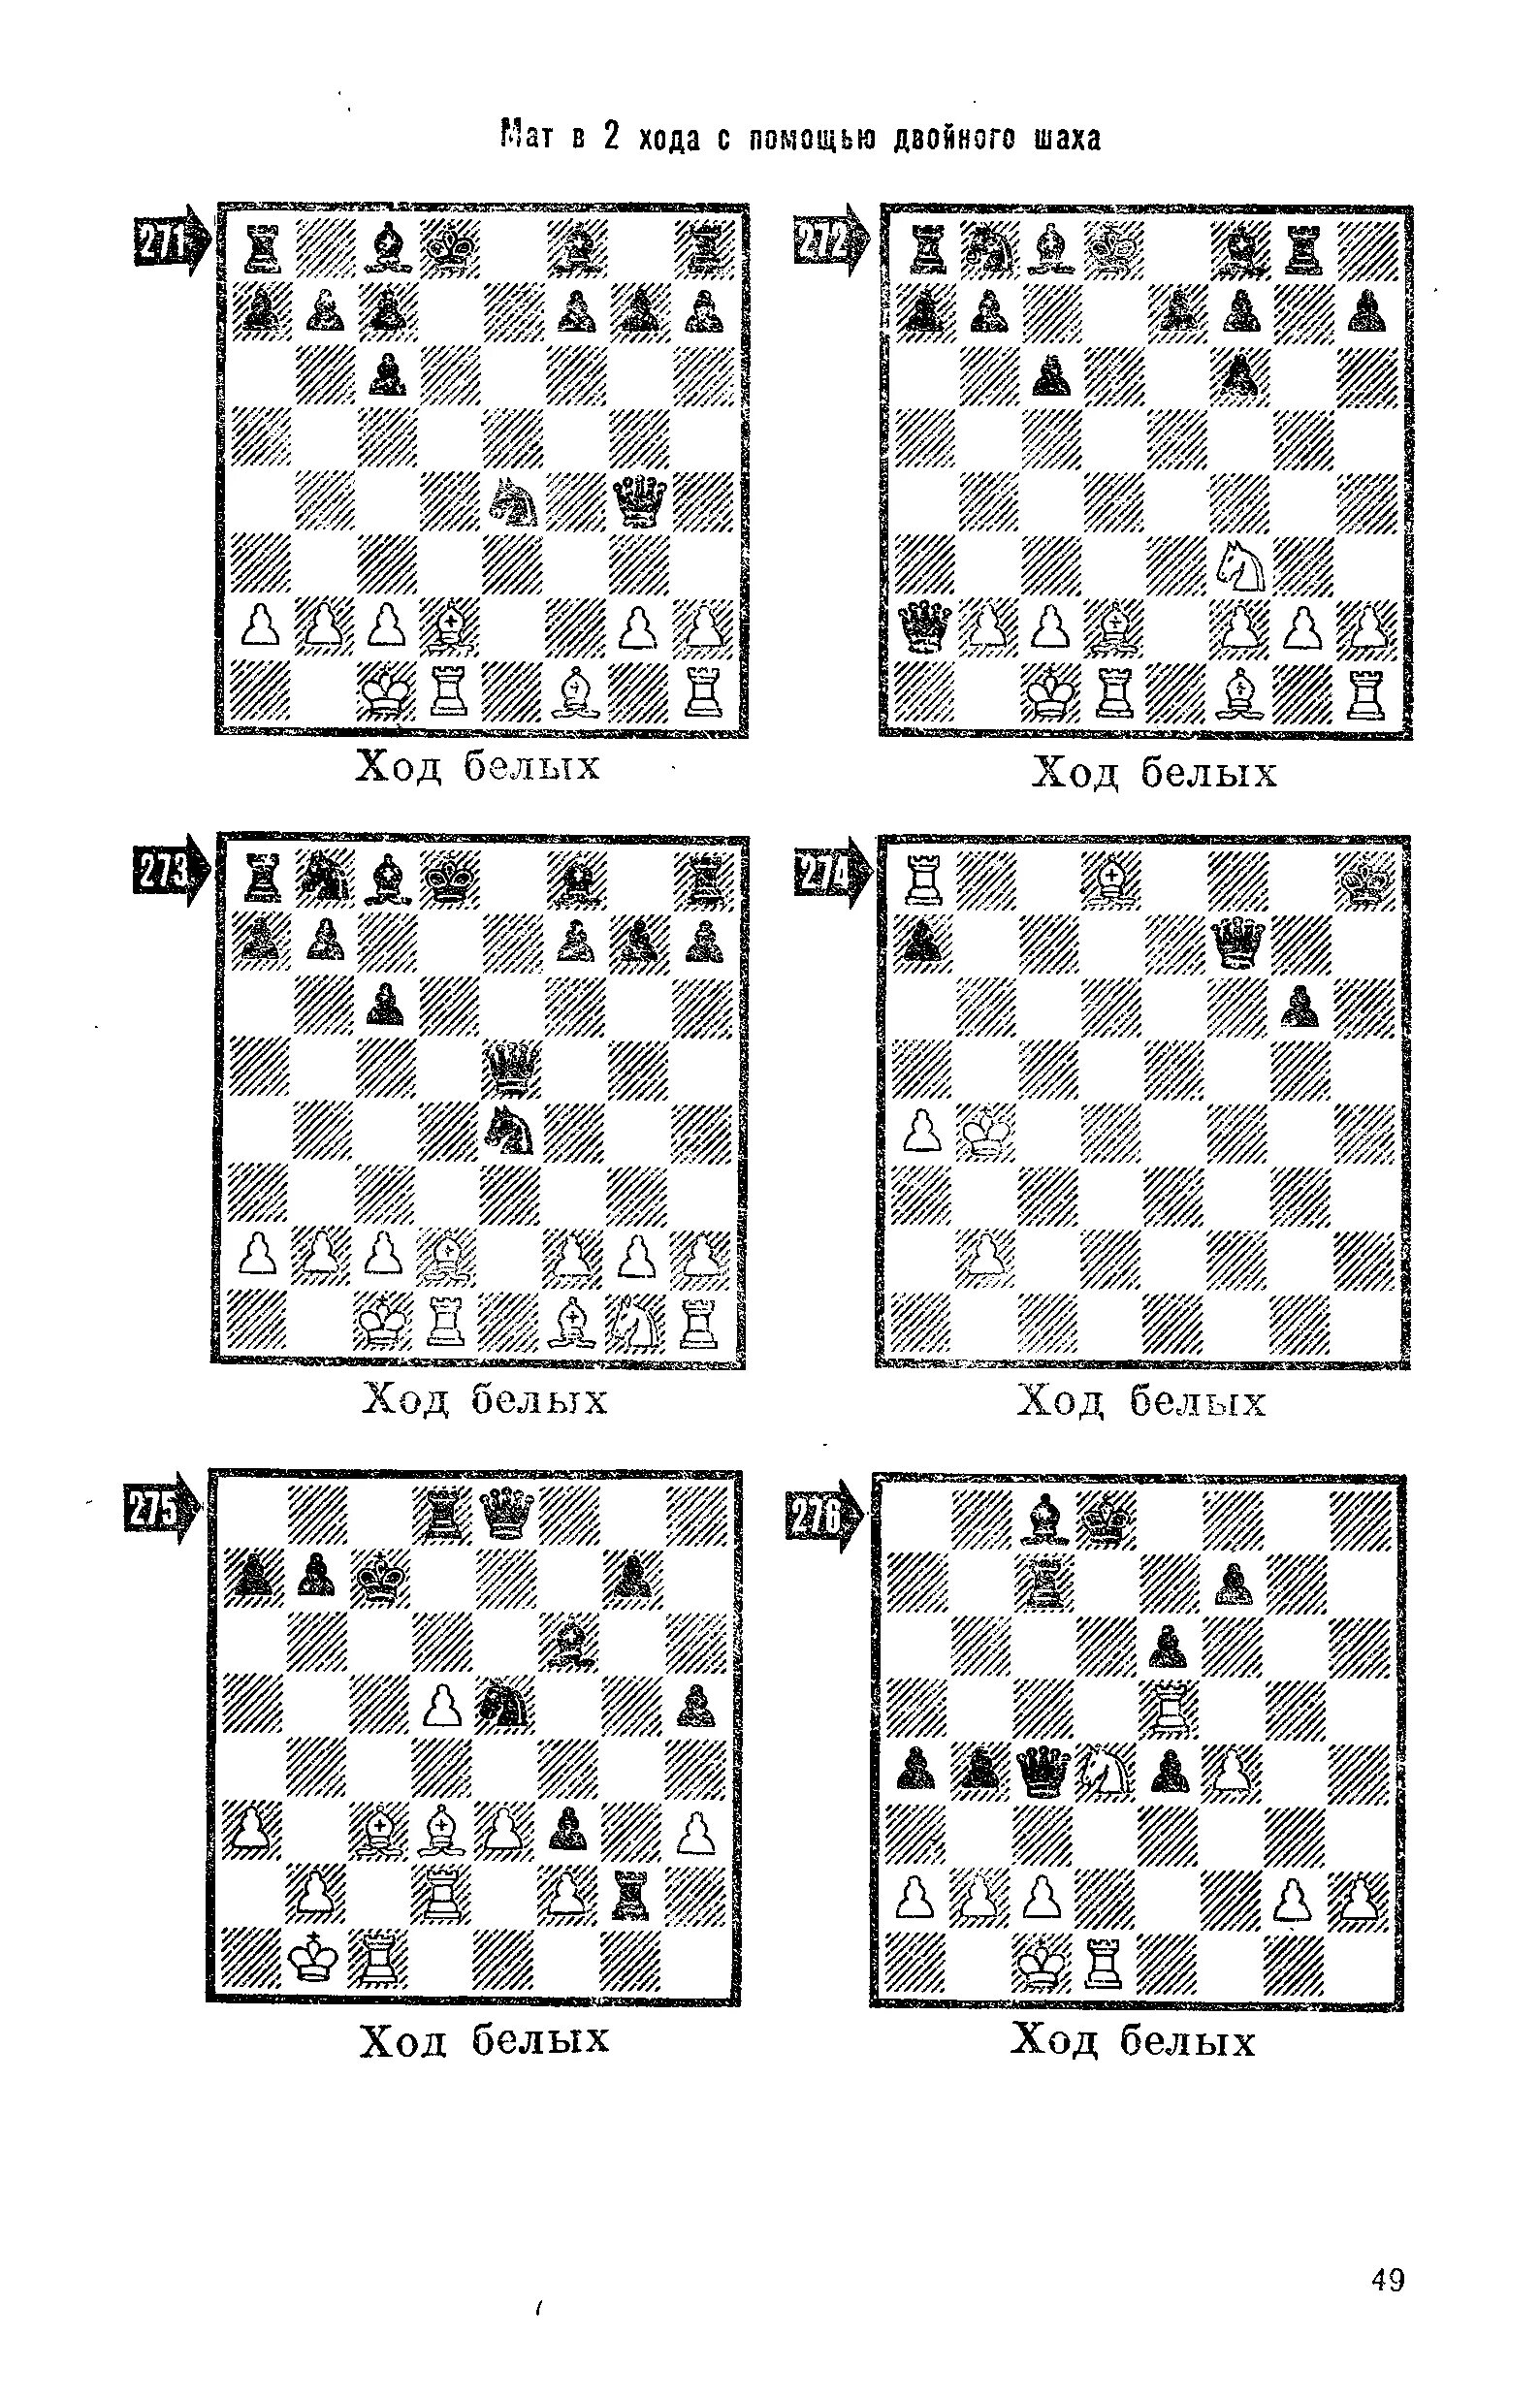 Мат комбинации. Иващенко шахматные комбинации. Иващенко шахматные задачи. Мат в 2 хода задачи для начинающих. Комбинации в шахматах.